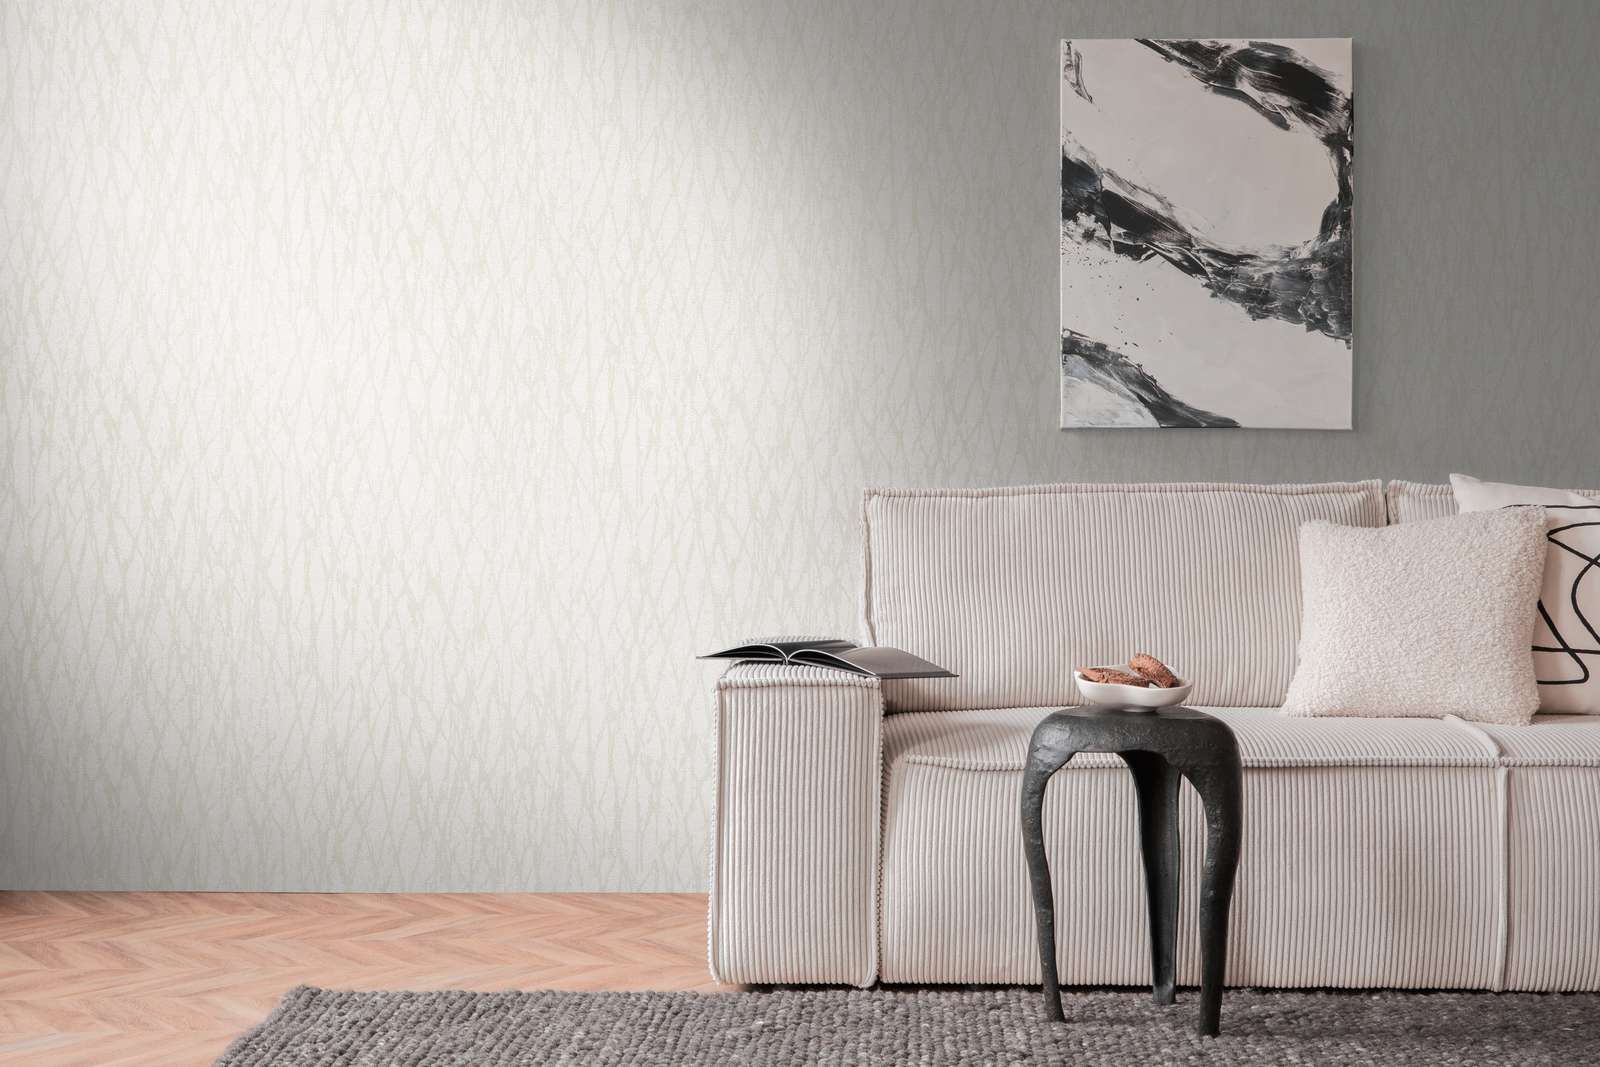             Vliestapete mit abstrakter Linien Bemusterung – Weiß, Beige, Creme
        